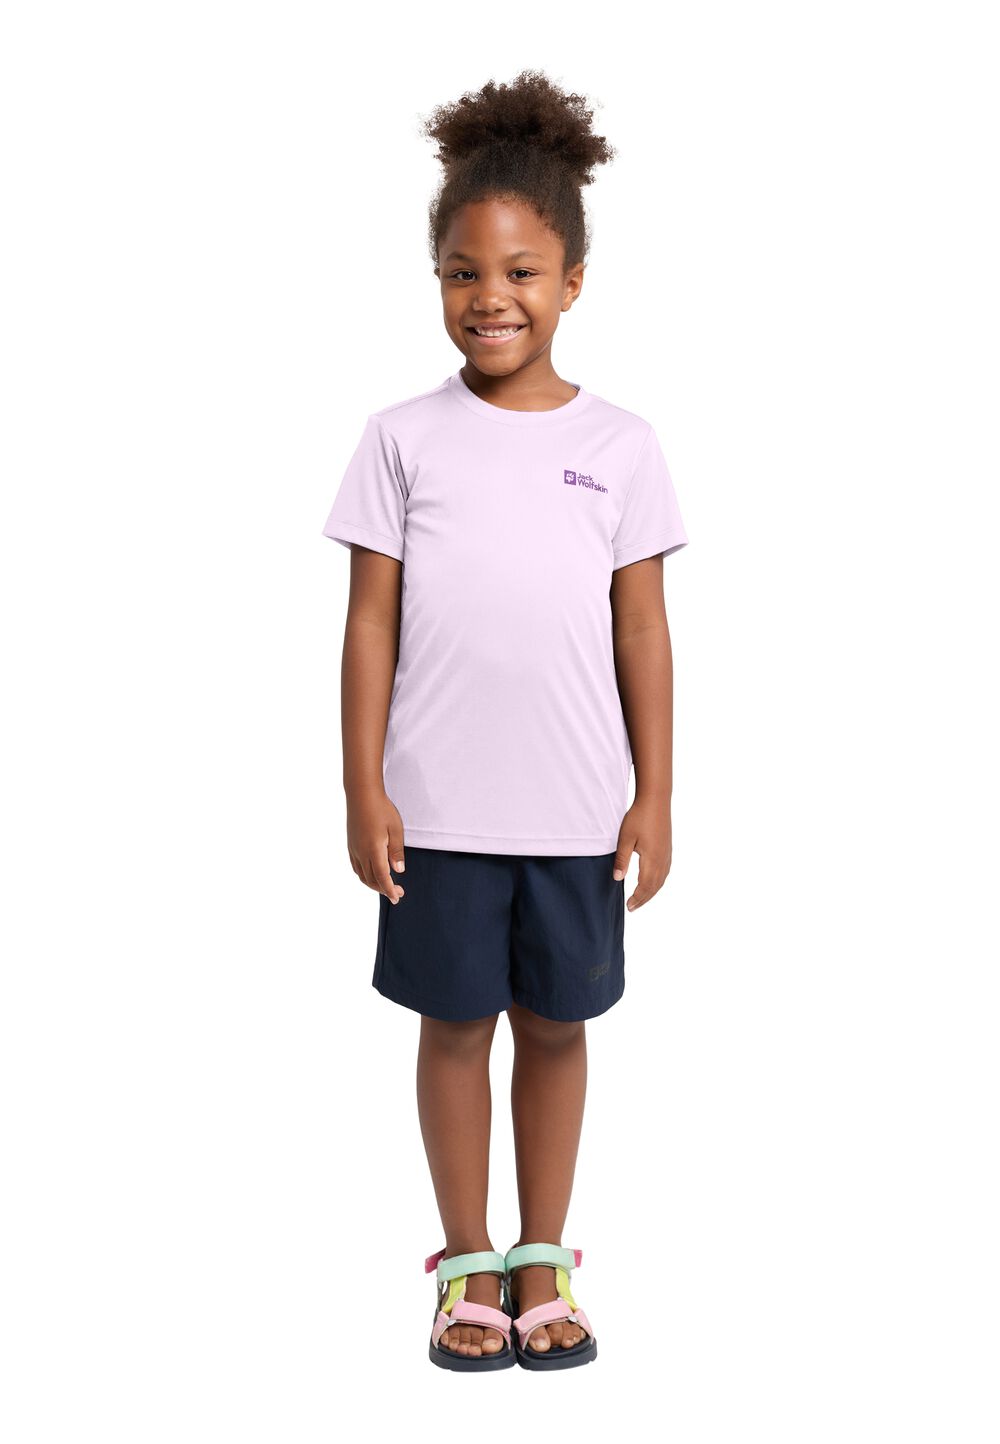 Jack Wolfskin Active Solid T-Shirt Kids Functioneel shirt Kinderen 128 pale lavendar pale lavendar